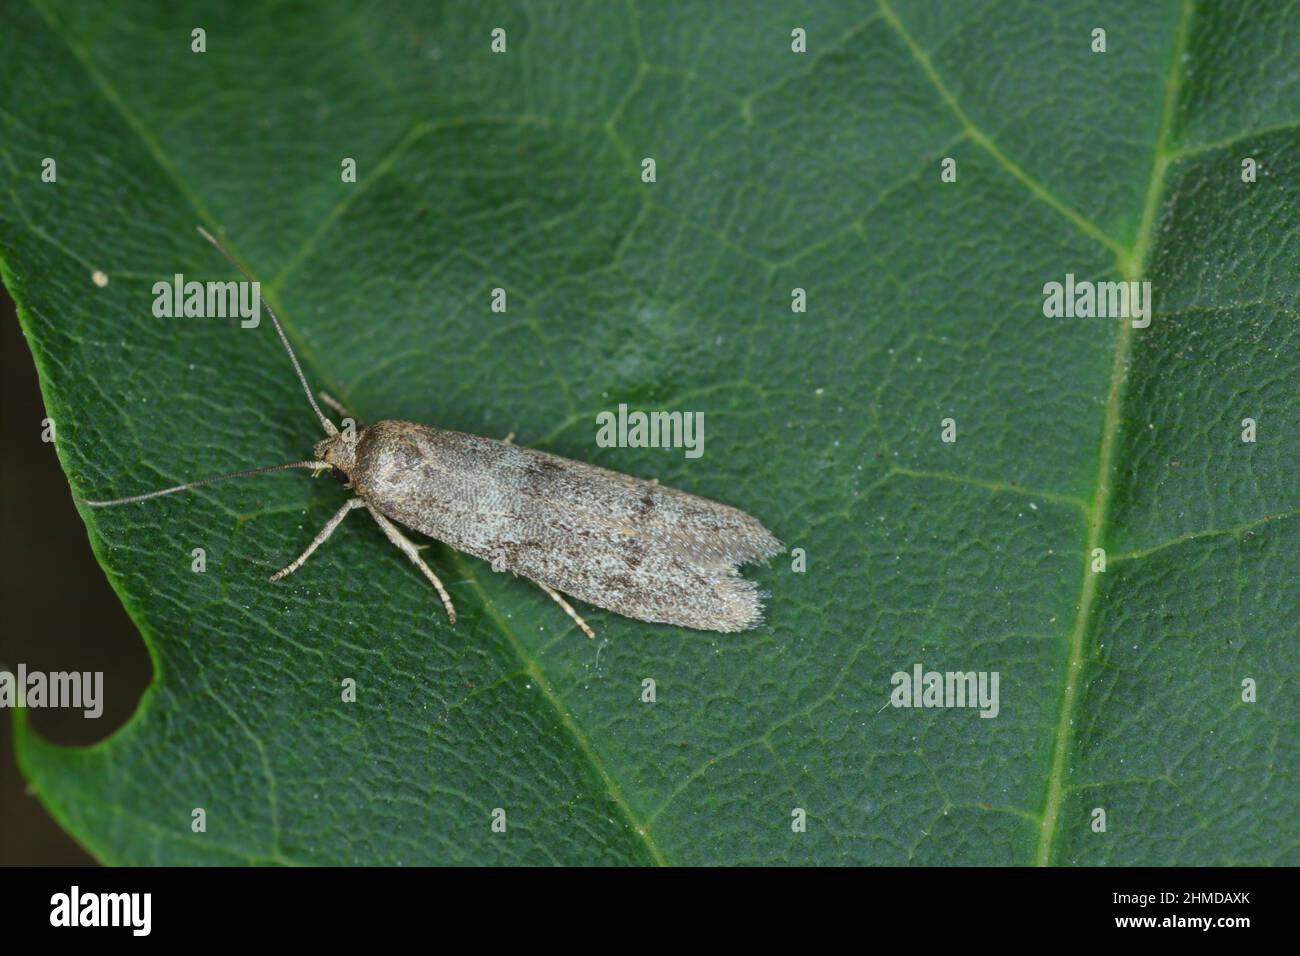 Perra Pyralid adulta Moth de la Familia Pyralidae en hoja verde. Foto de stock